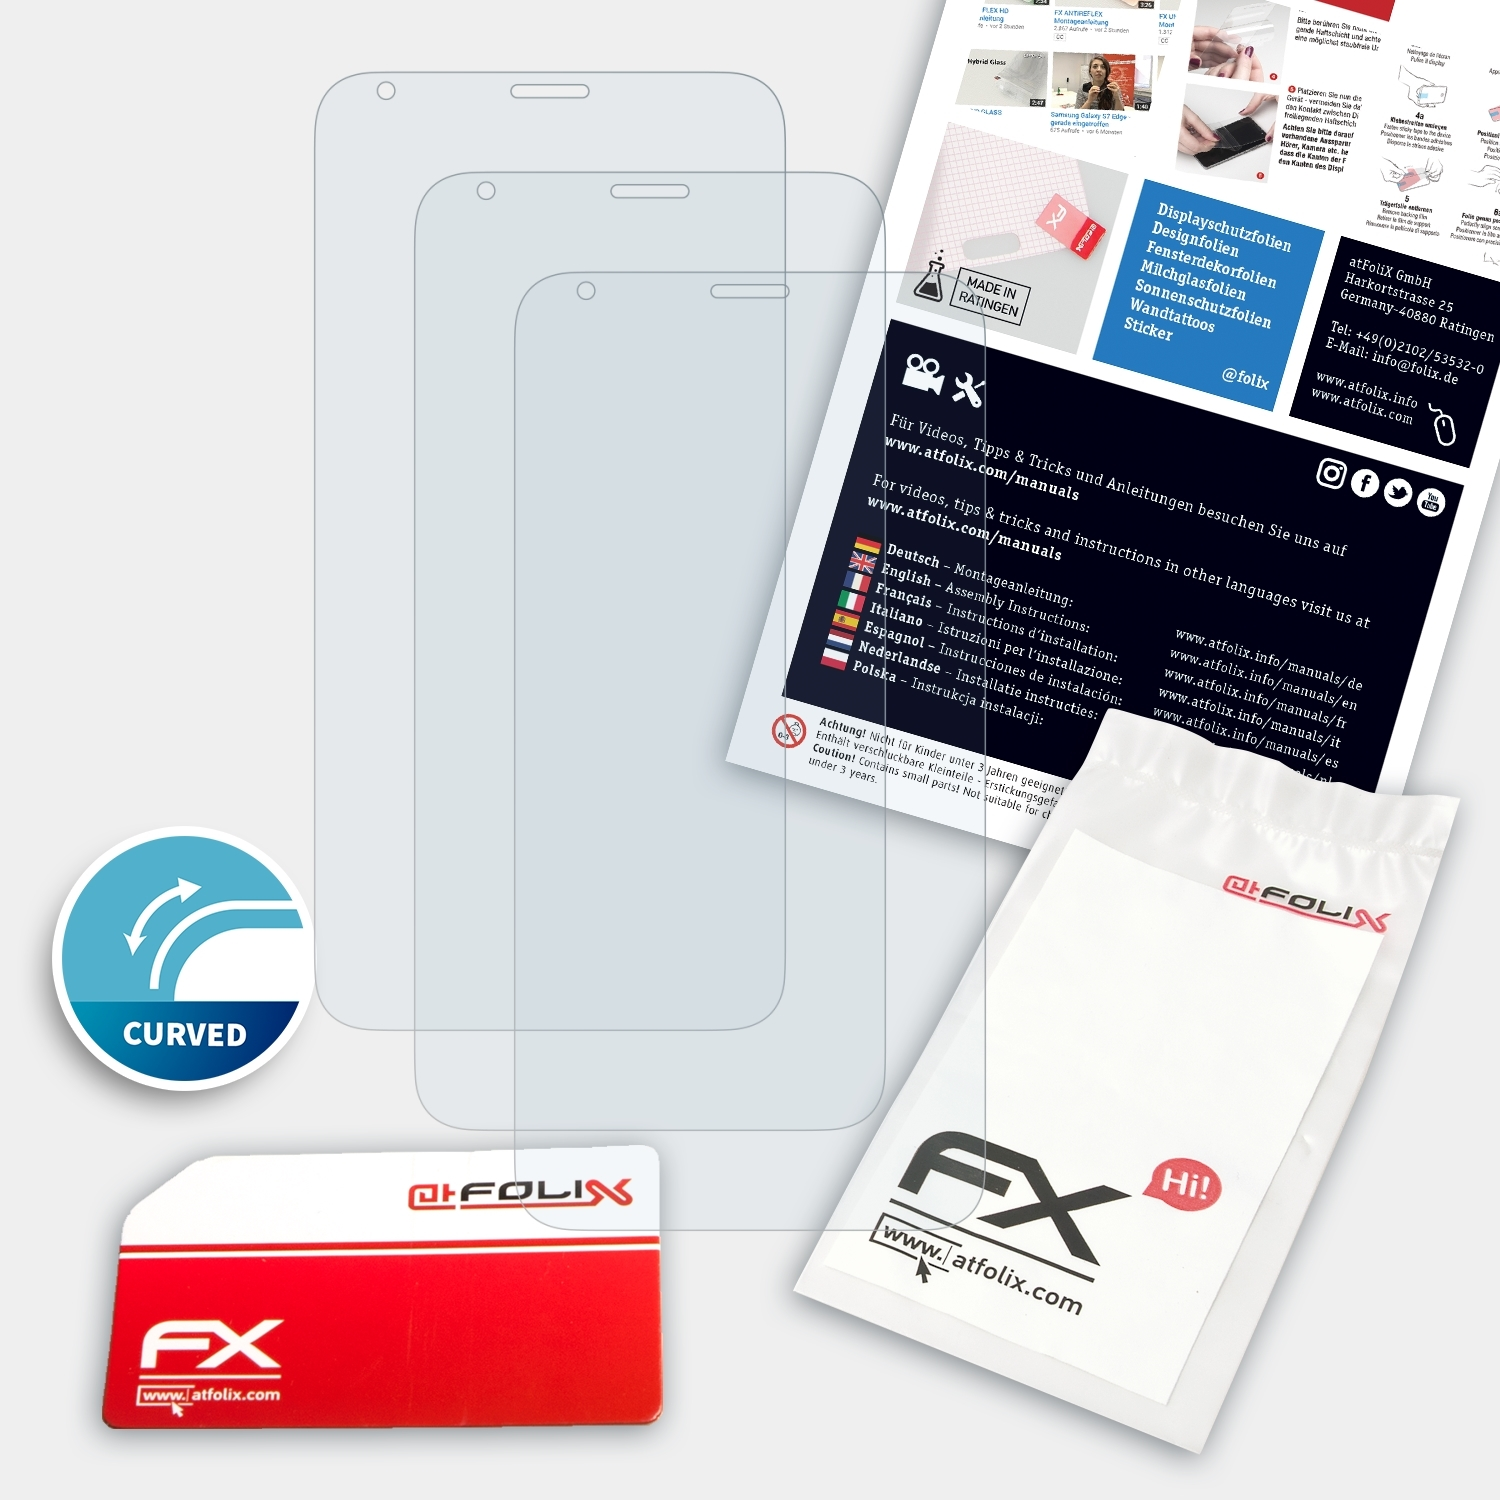 ATFOLIX 3x FX-ActiFleX Displayschutz(für LG V30S ThinQ)